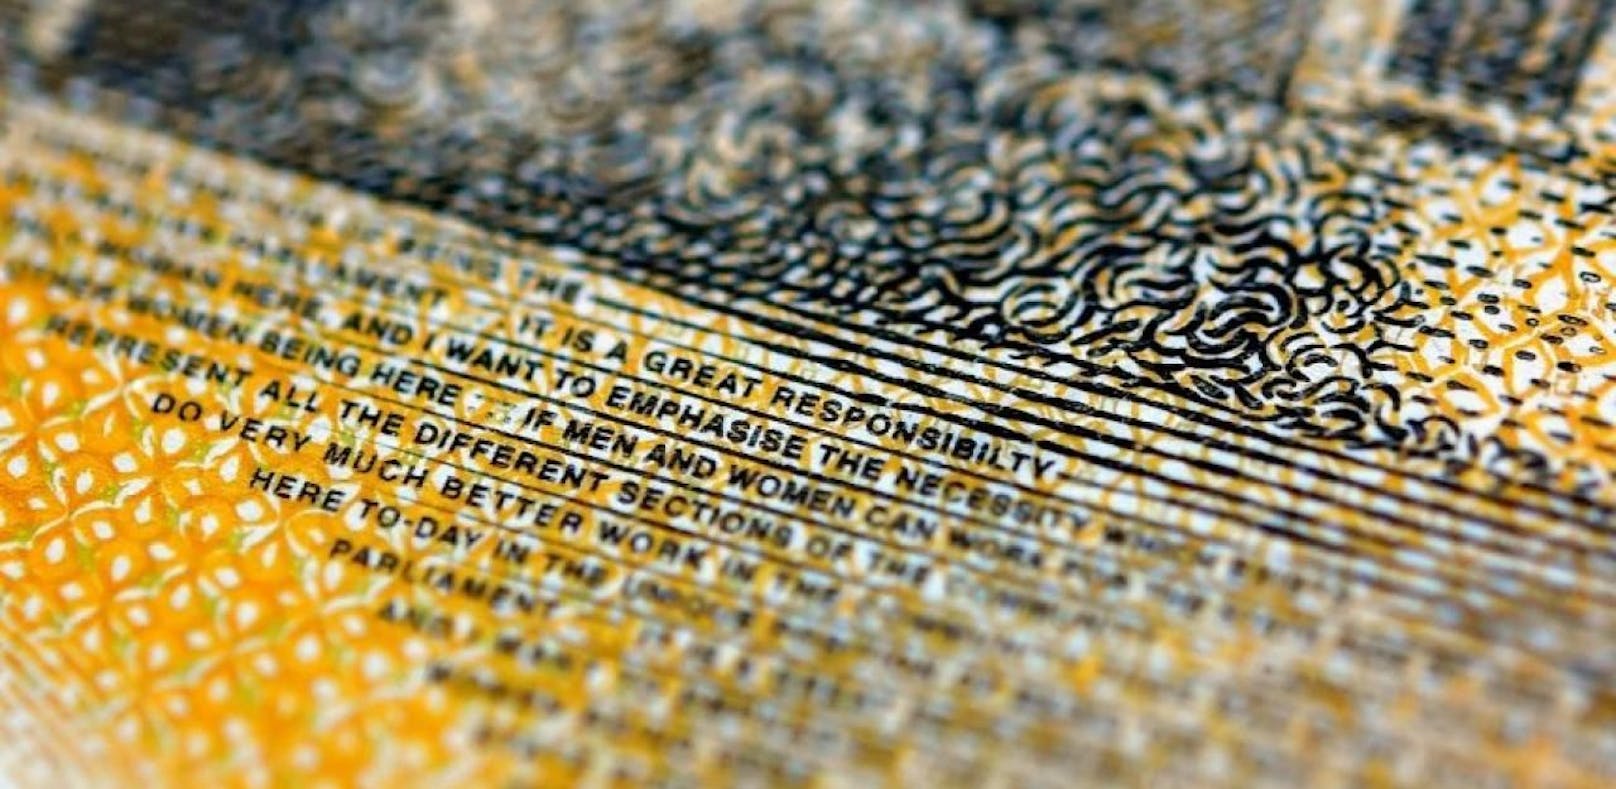 Seit Oktober gibt Australien neue 50-Dollar-Scheine aus. Diese beinhalten jedoch einen markanten Schreibfehler - können Sie ihn finden?